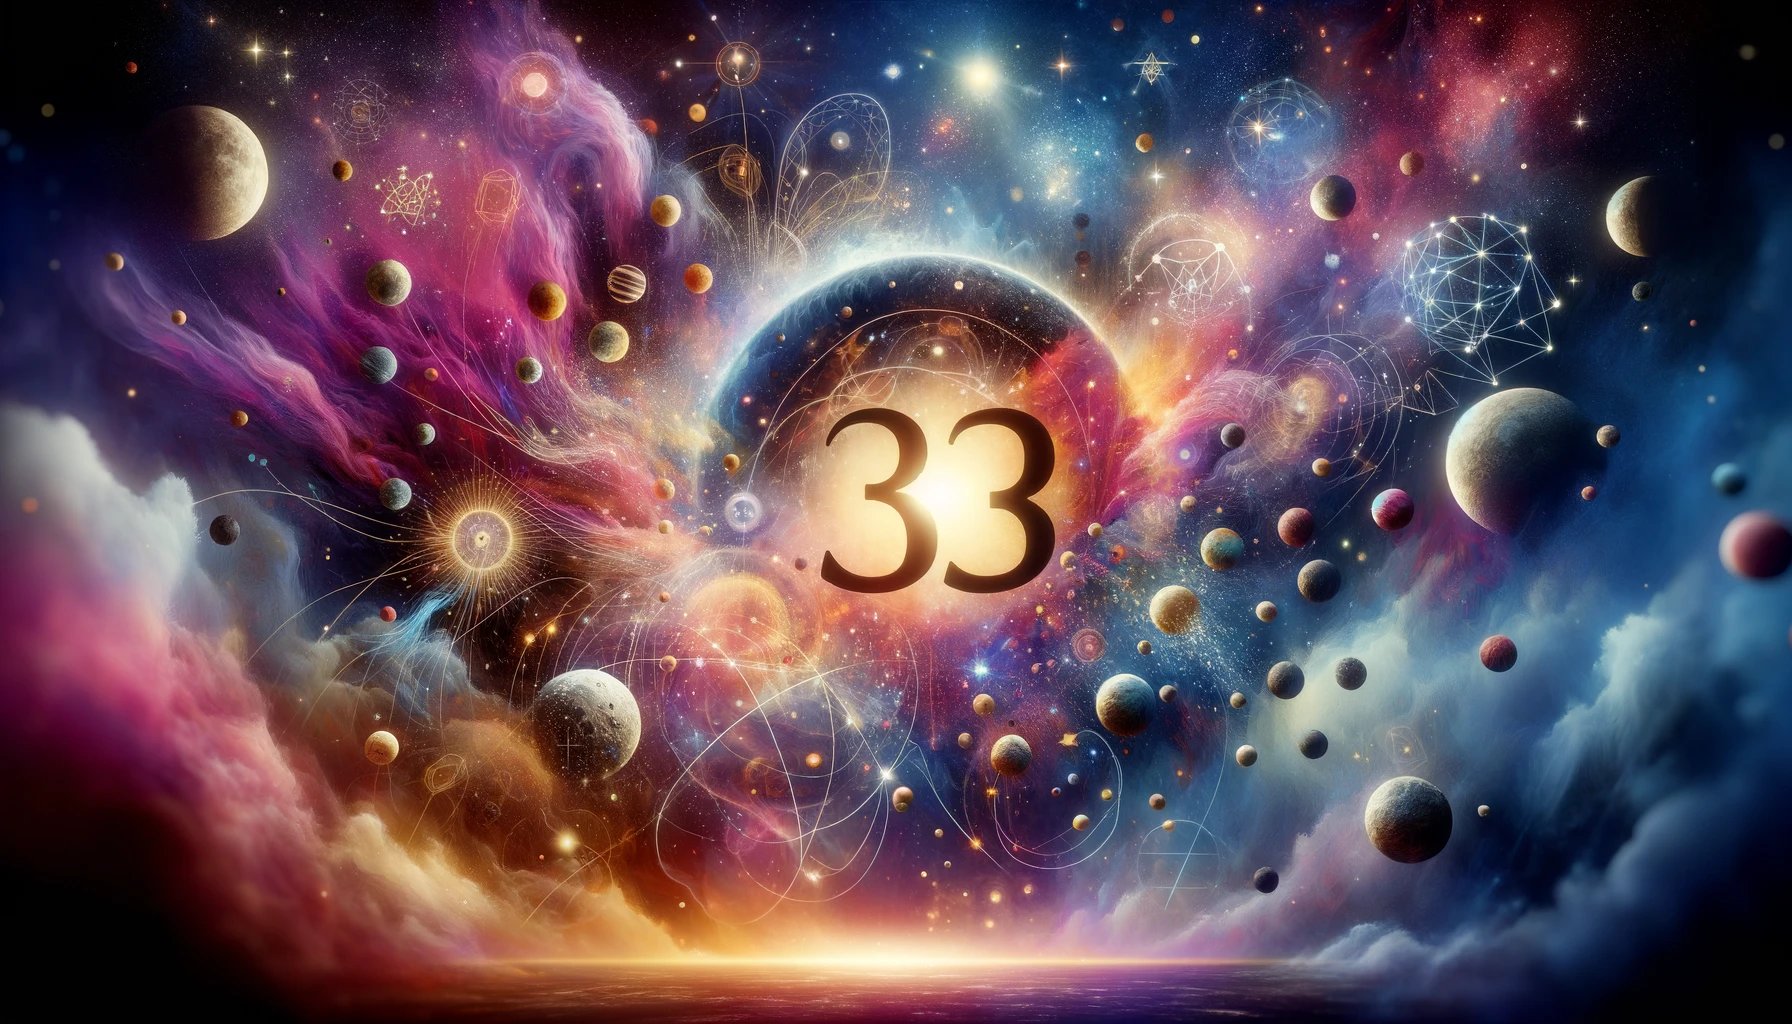 simbolismo y trascendencia espiritual del número 33 en el universo